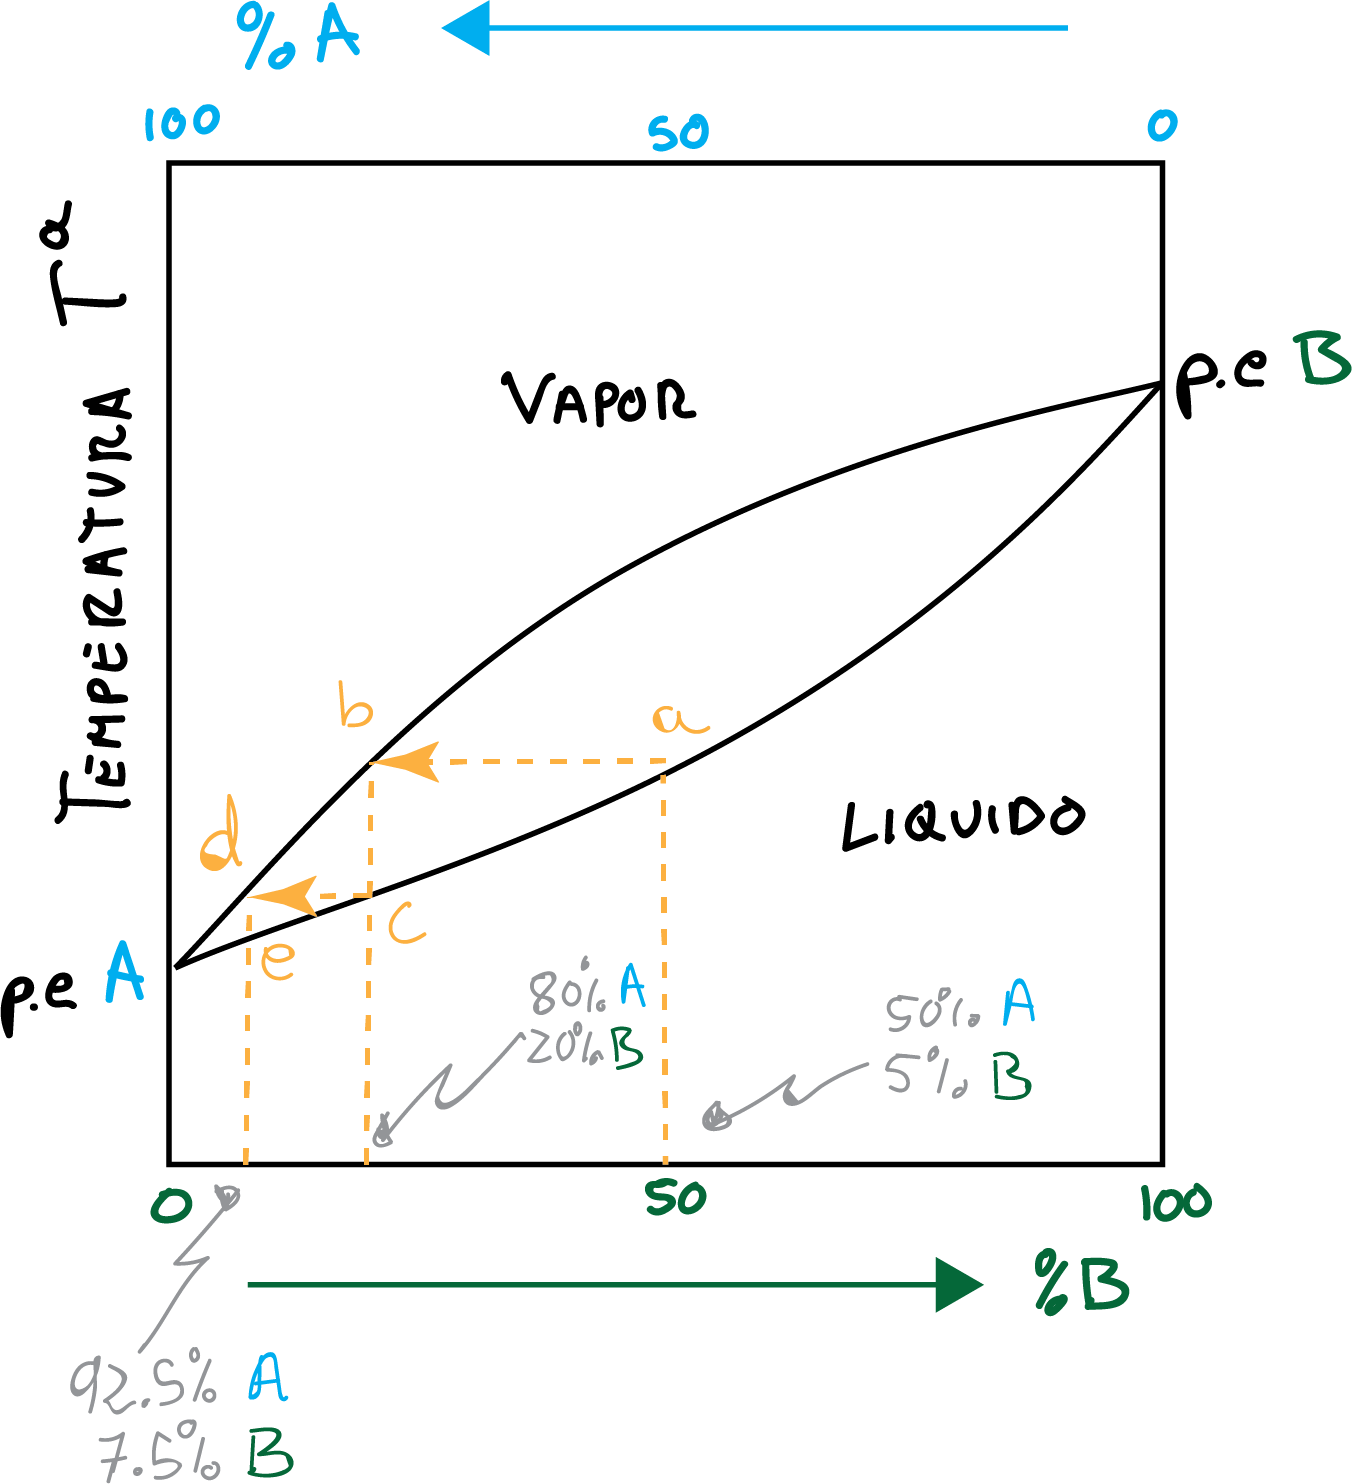 curva de destilación fraccionada de dos componenetes temperatura liquido vapor